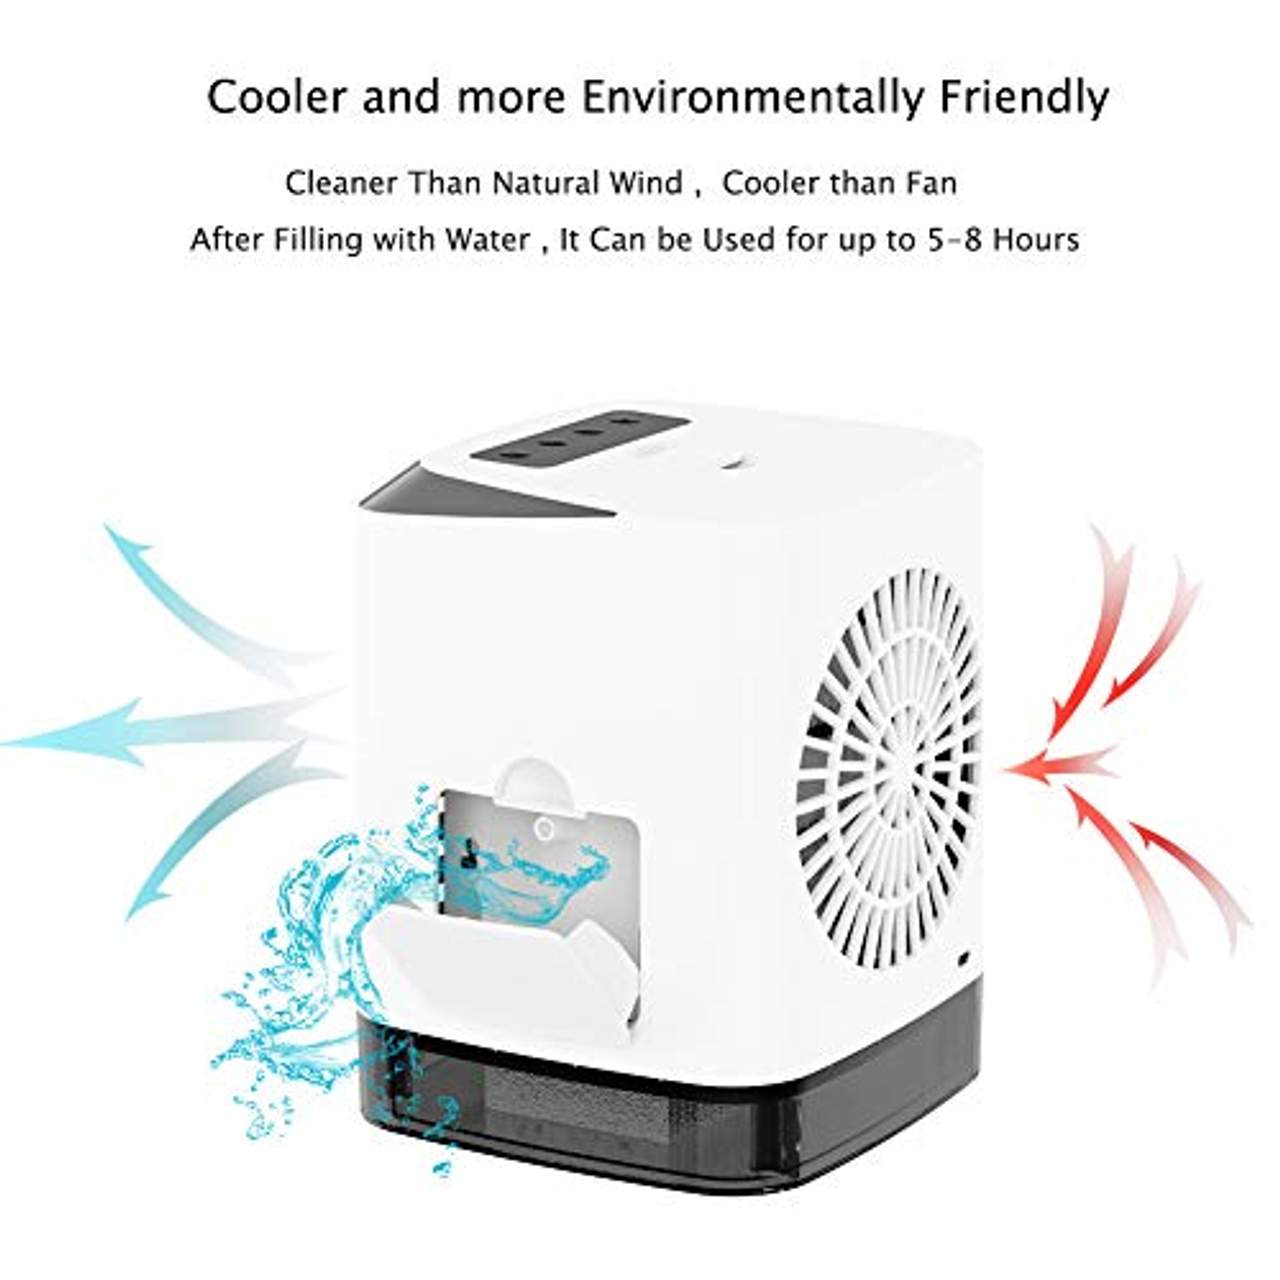 Tragbare Klimaanlage Air Cooler Luftbefeuchter